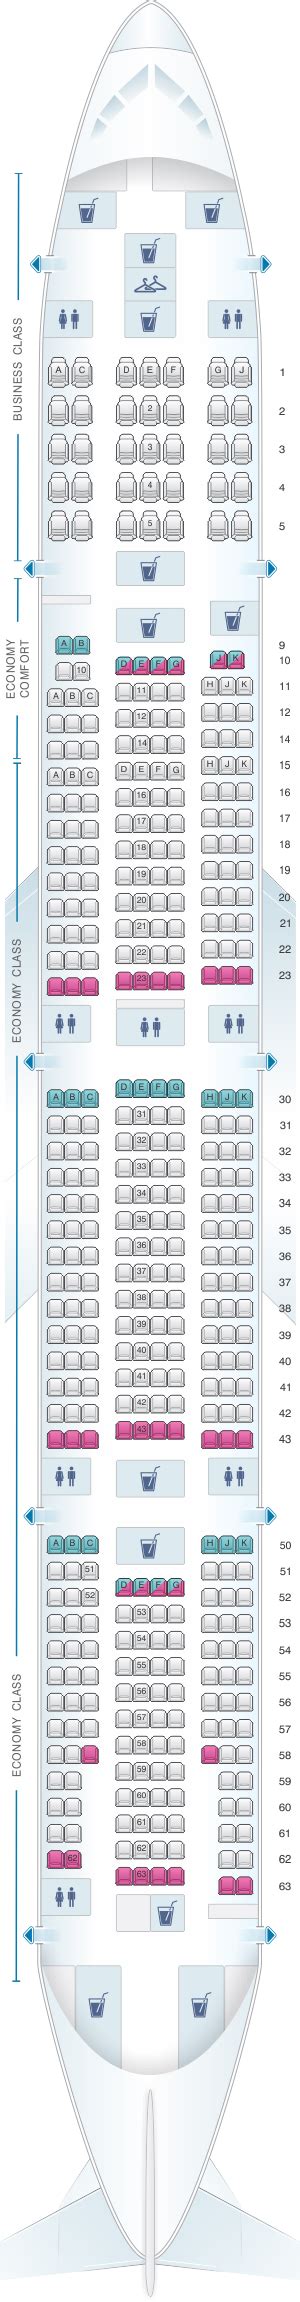 Delta Boeing 777 300er Seat Map